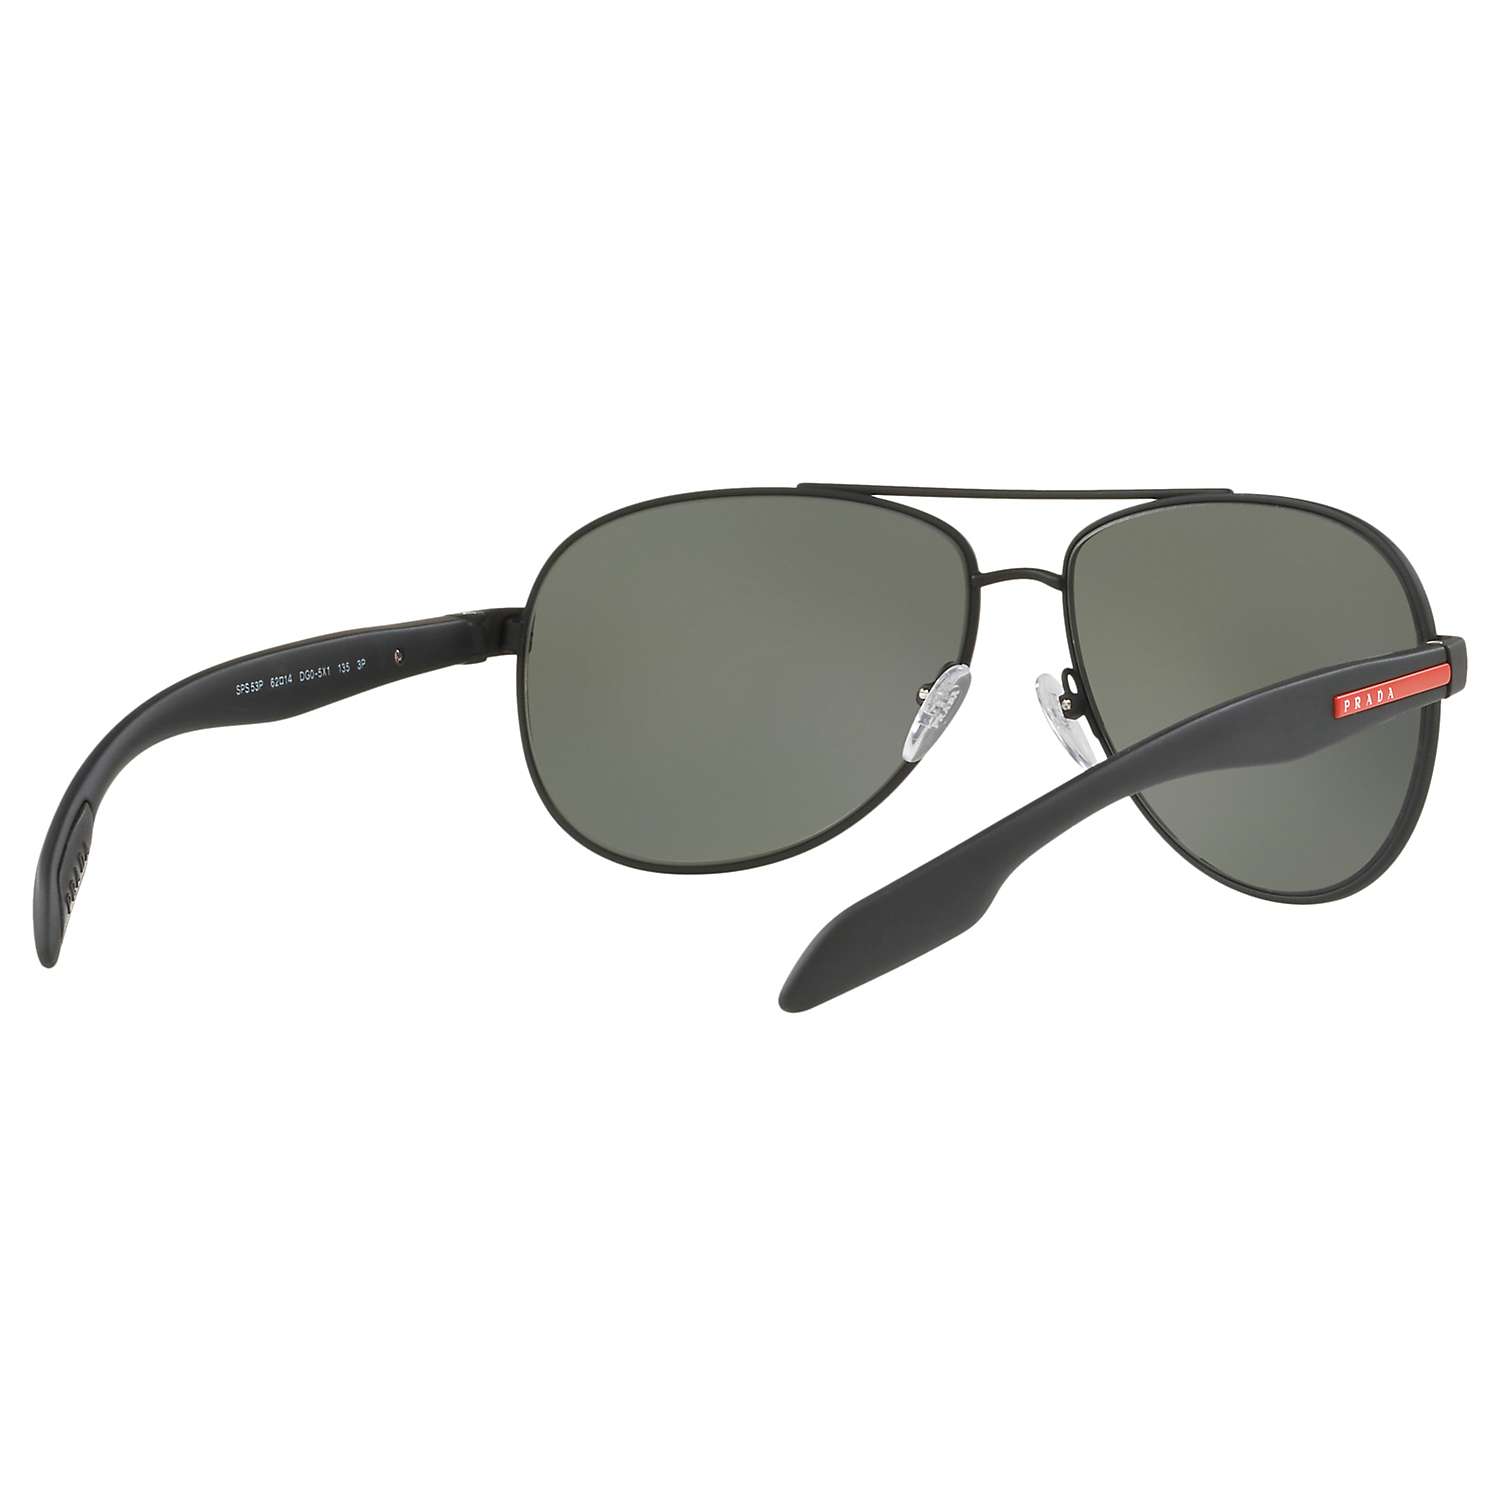 Buy Prada Linea Rossa PS 53PS Men's Polarised Aviator Sunglasses Online at johnlewis.com